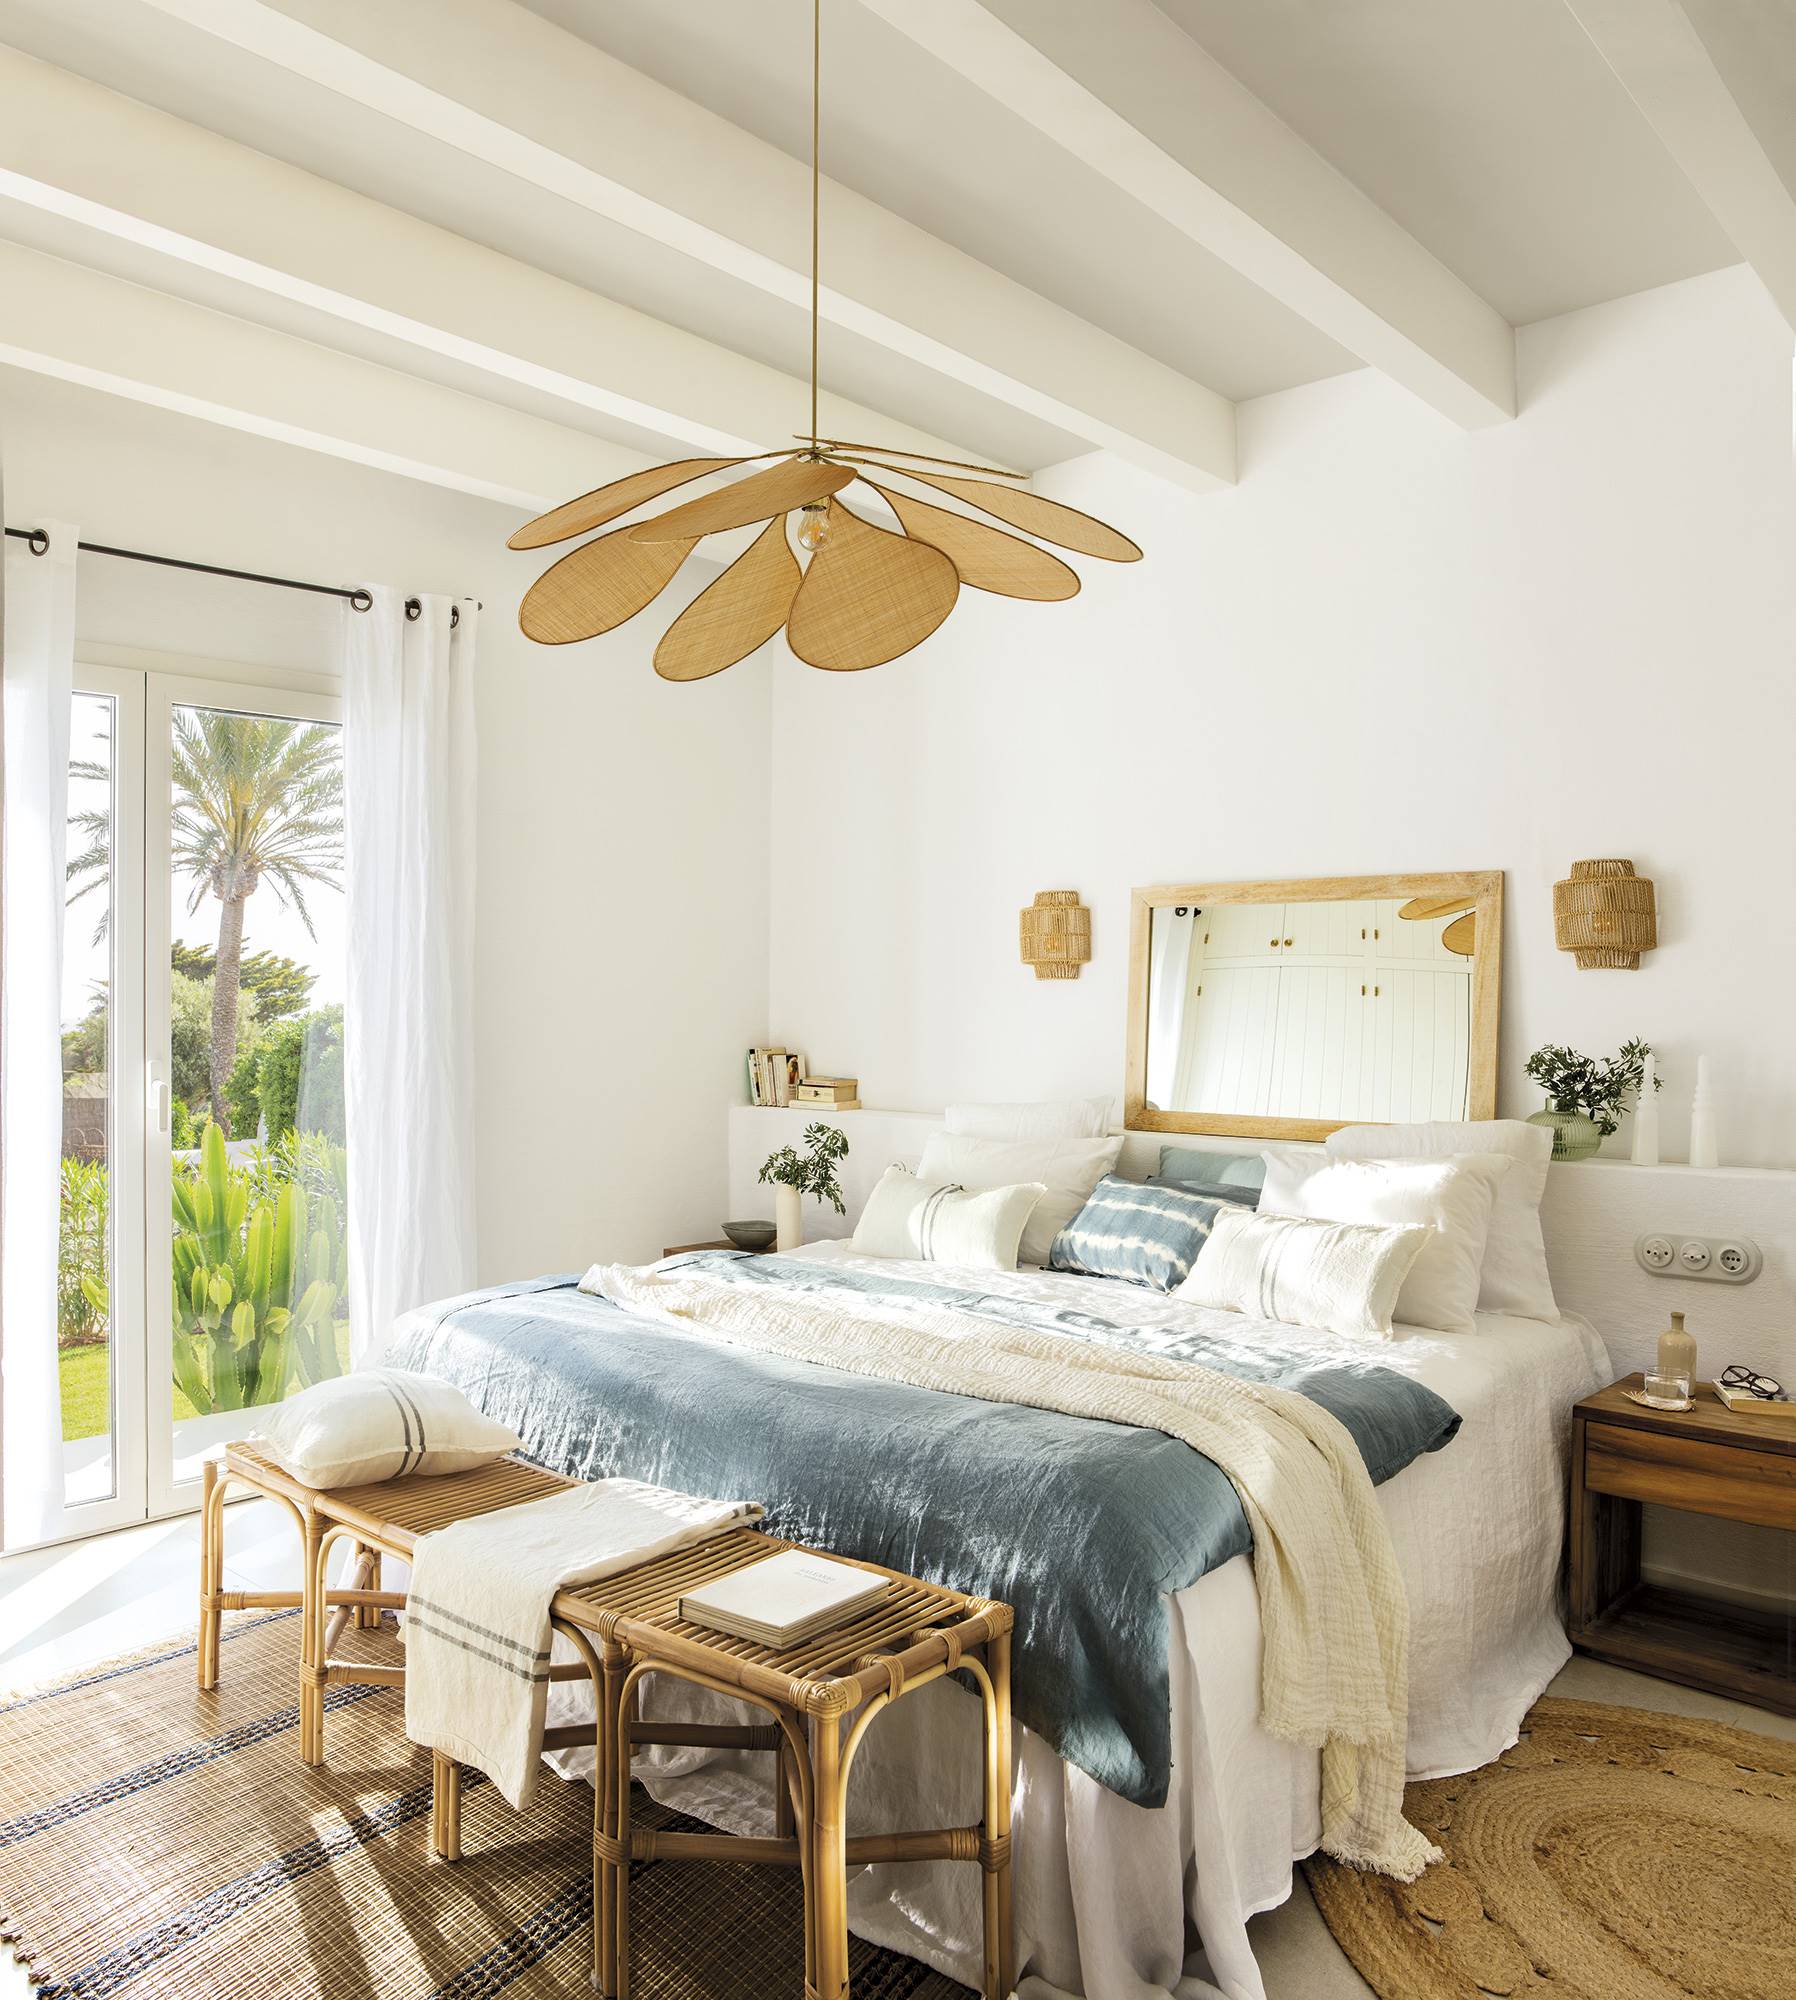 Dormitorio con cabecero de obra, cojines blancos y azules, lámpara de rafia y alfombras de fibras